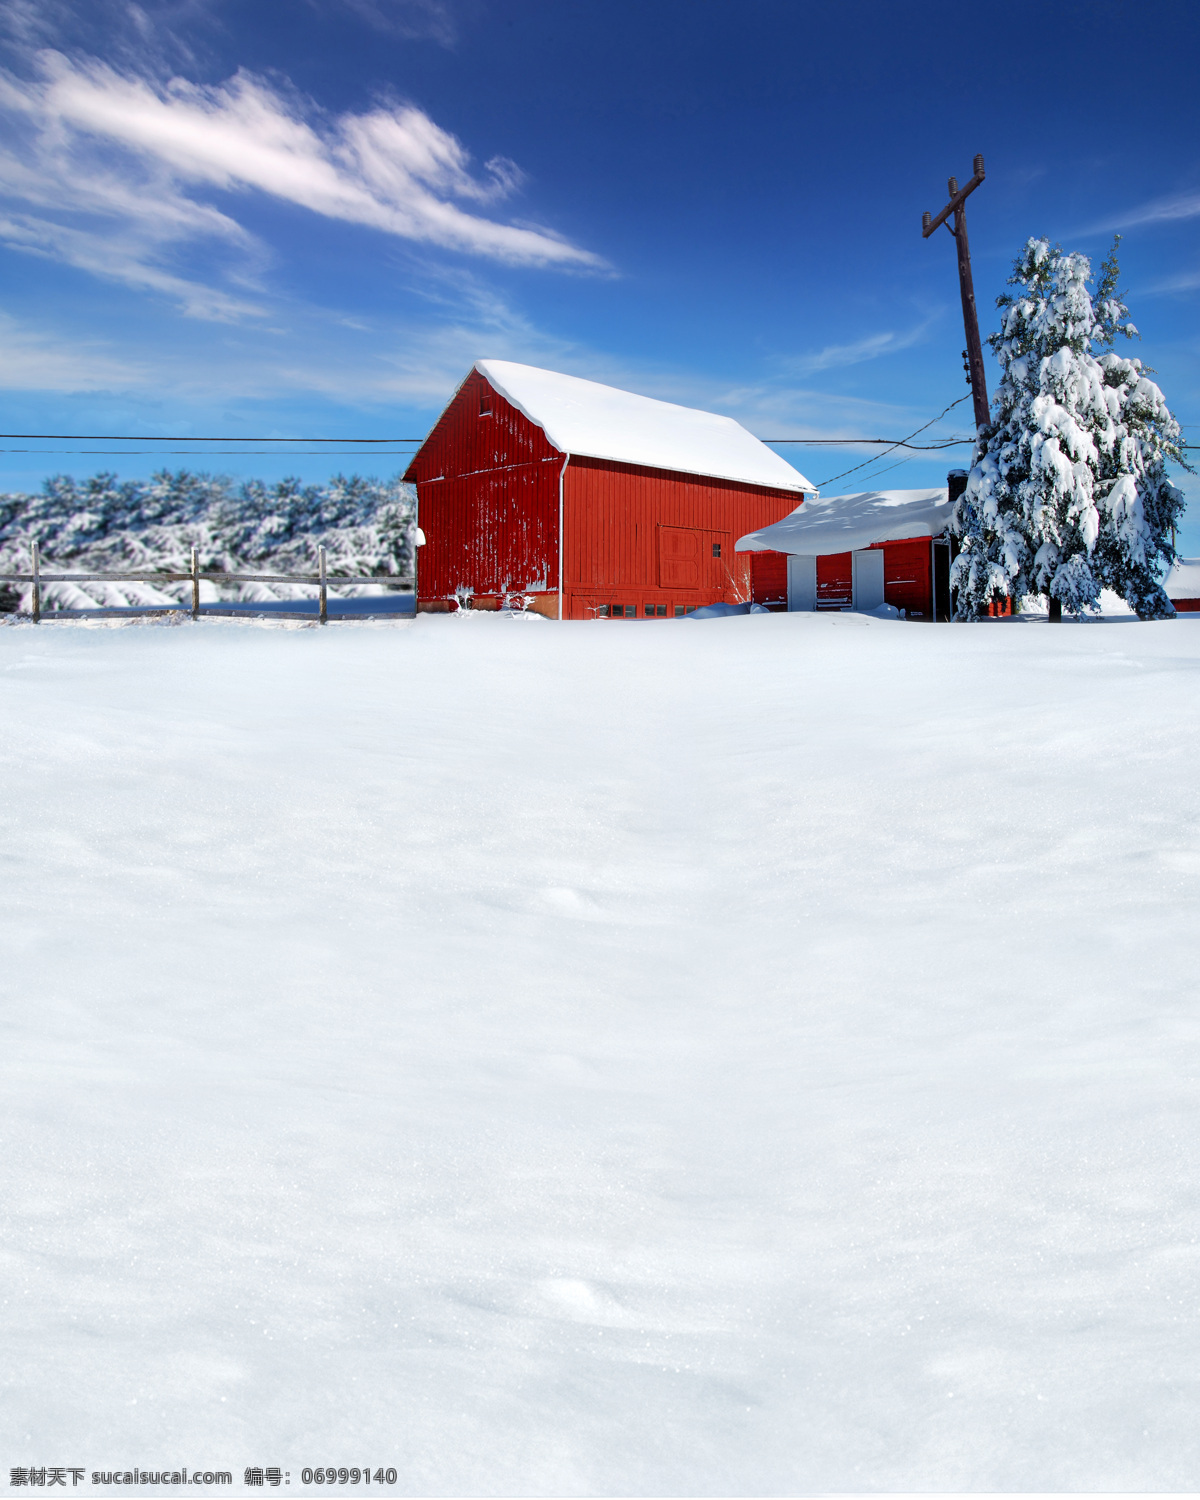 摄影背景 房屋背景 红房子 雪地 天空 蓝天 白云 高清图 摄影美图 照相背景 画布 摄影布 喷绘画 自然景观 自然风景